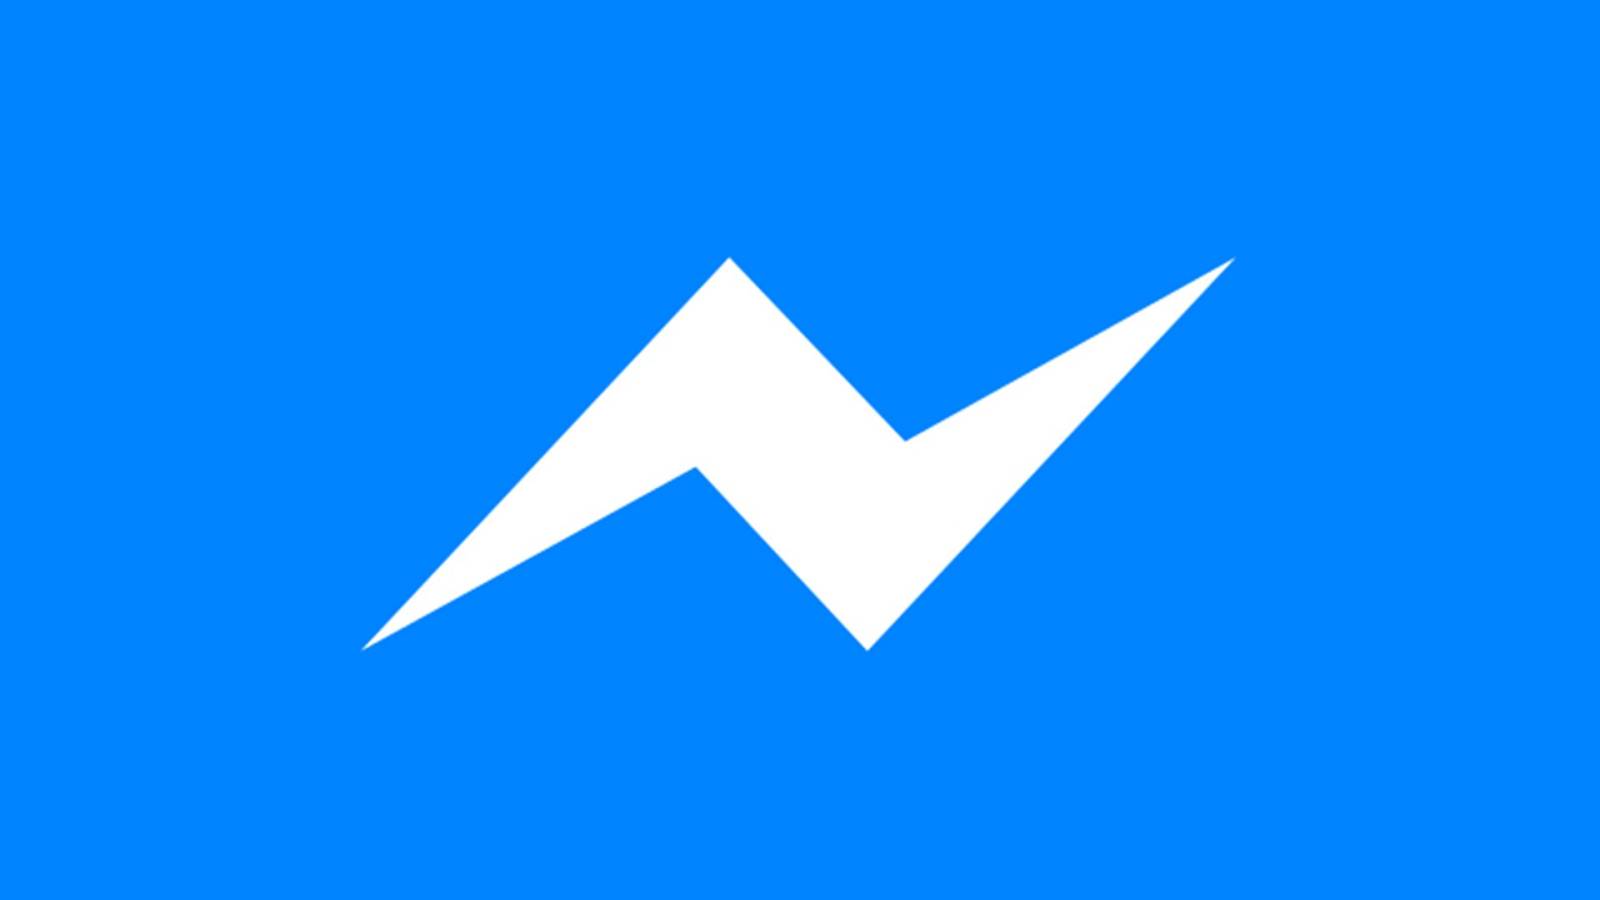 Das neue Update für Facebook Messenger für Telefone und Tablets veröffentlicht